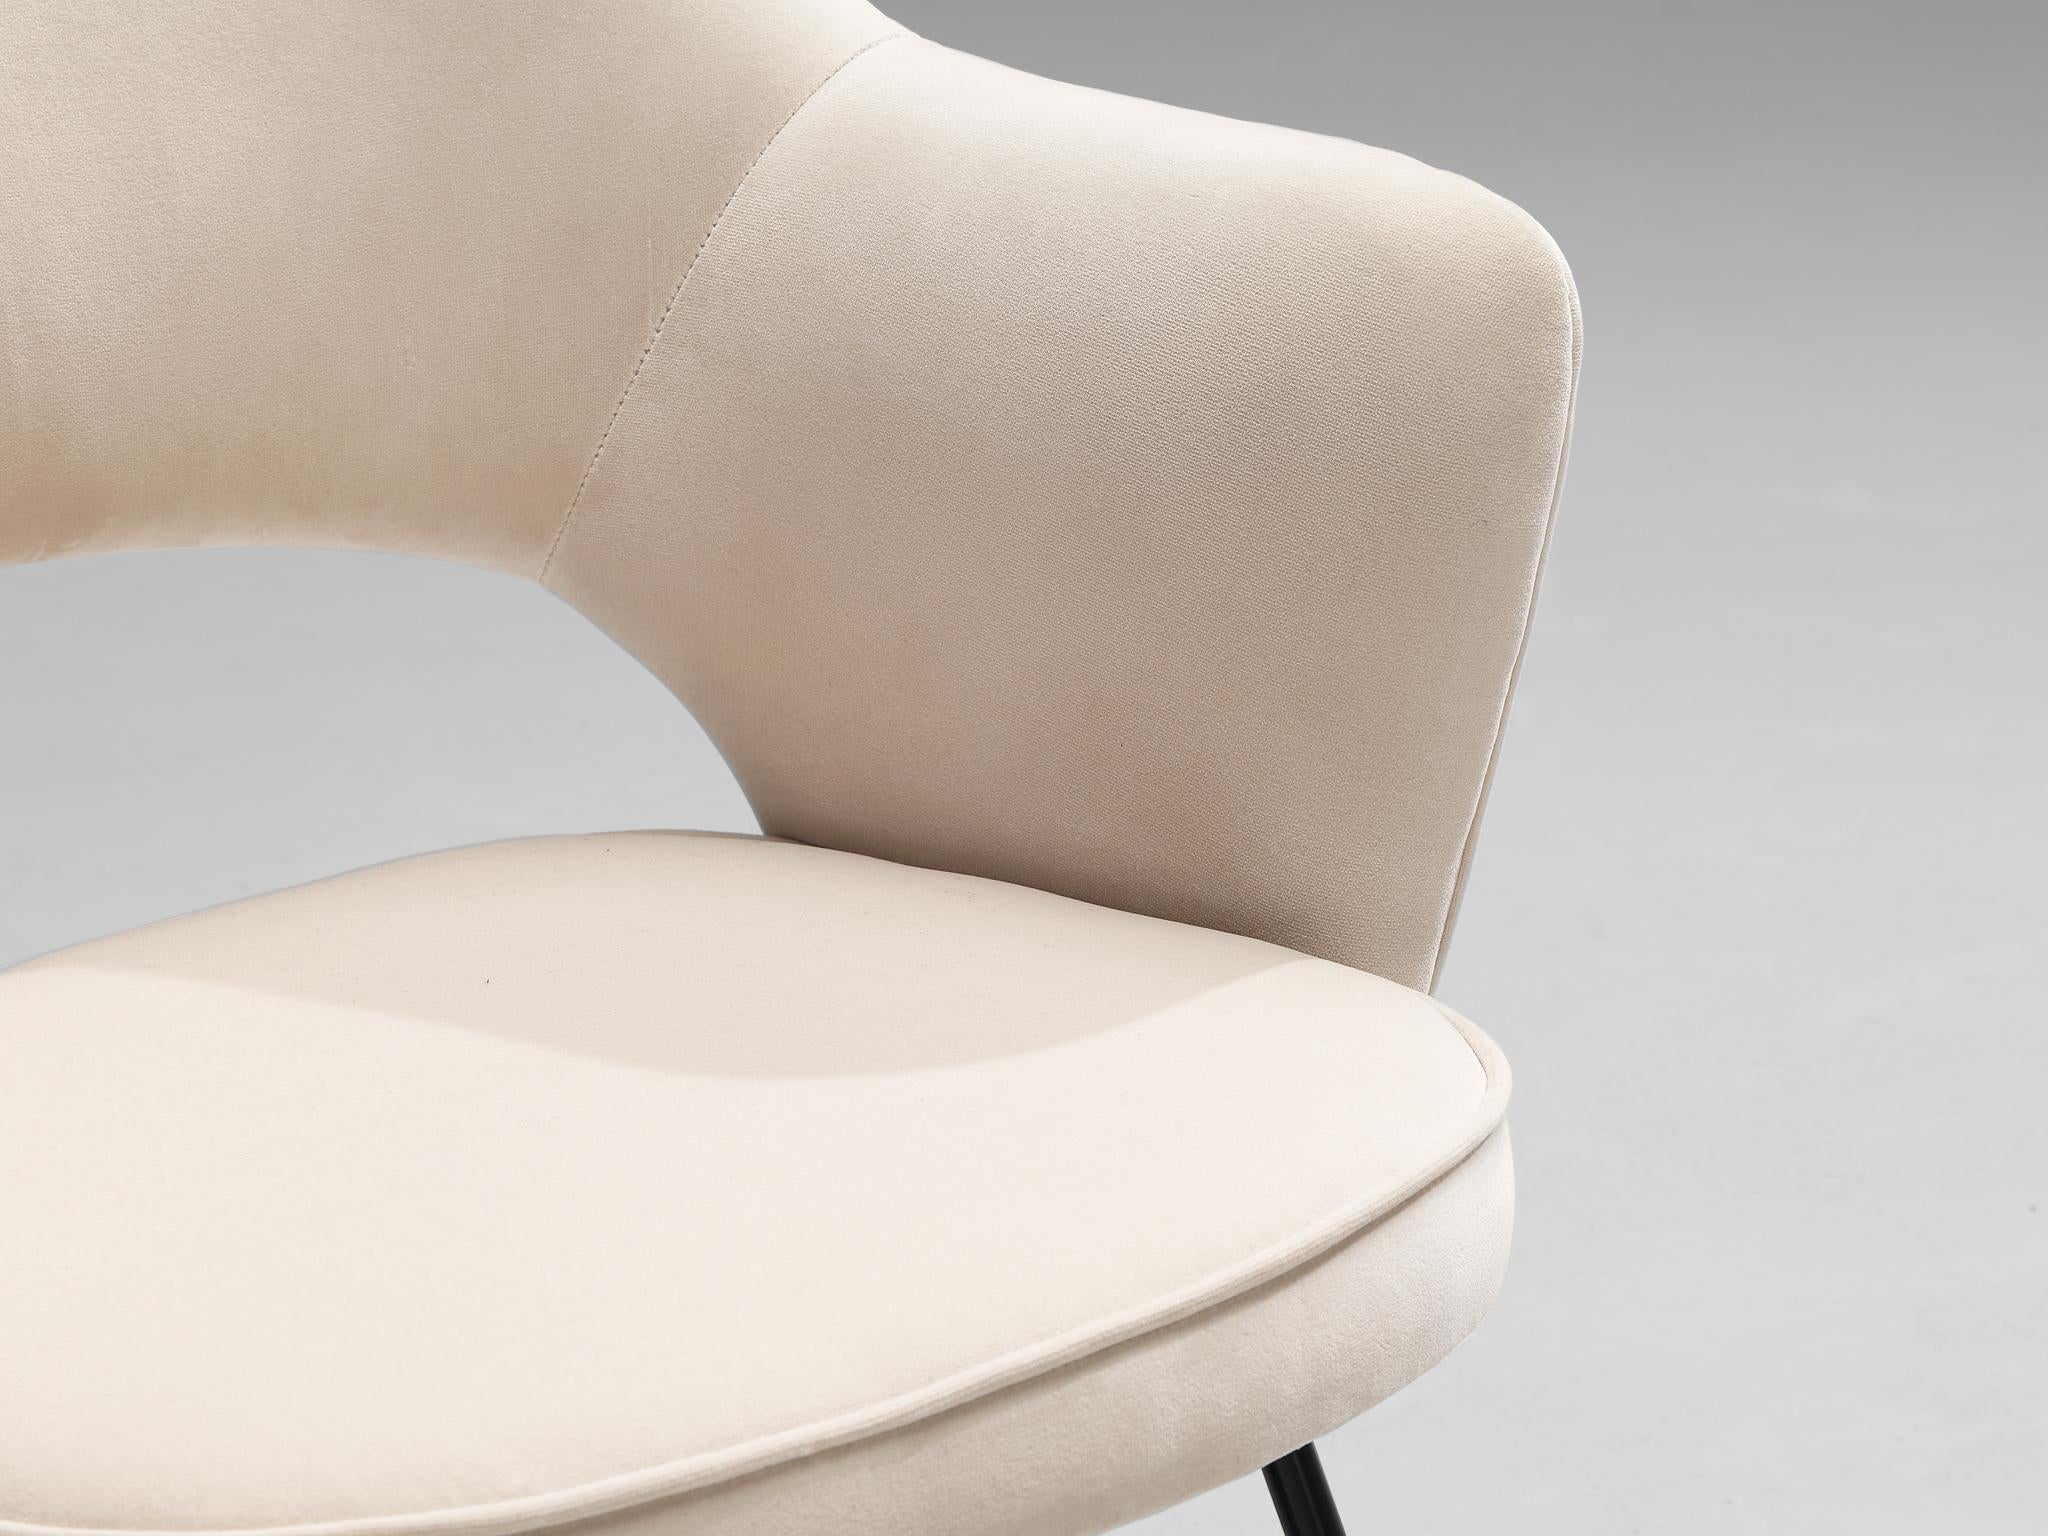 Eero Saarinen Limited Edition ‘Conference’ Armchairs of UNESCO Paris